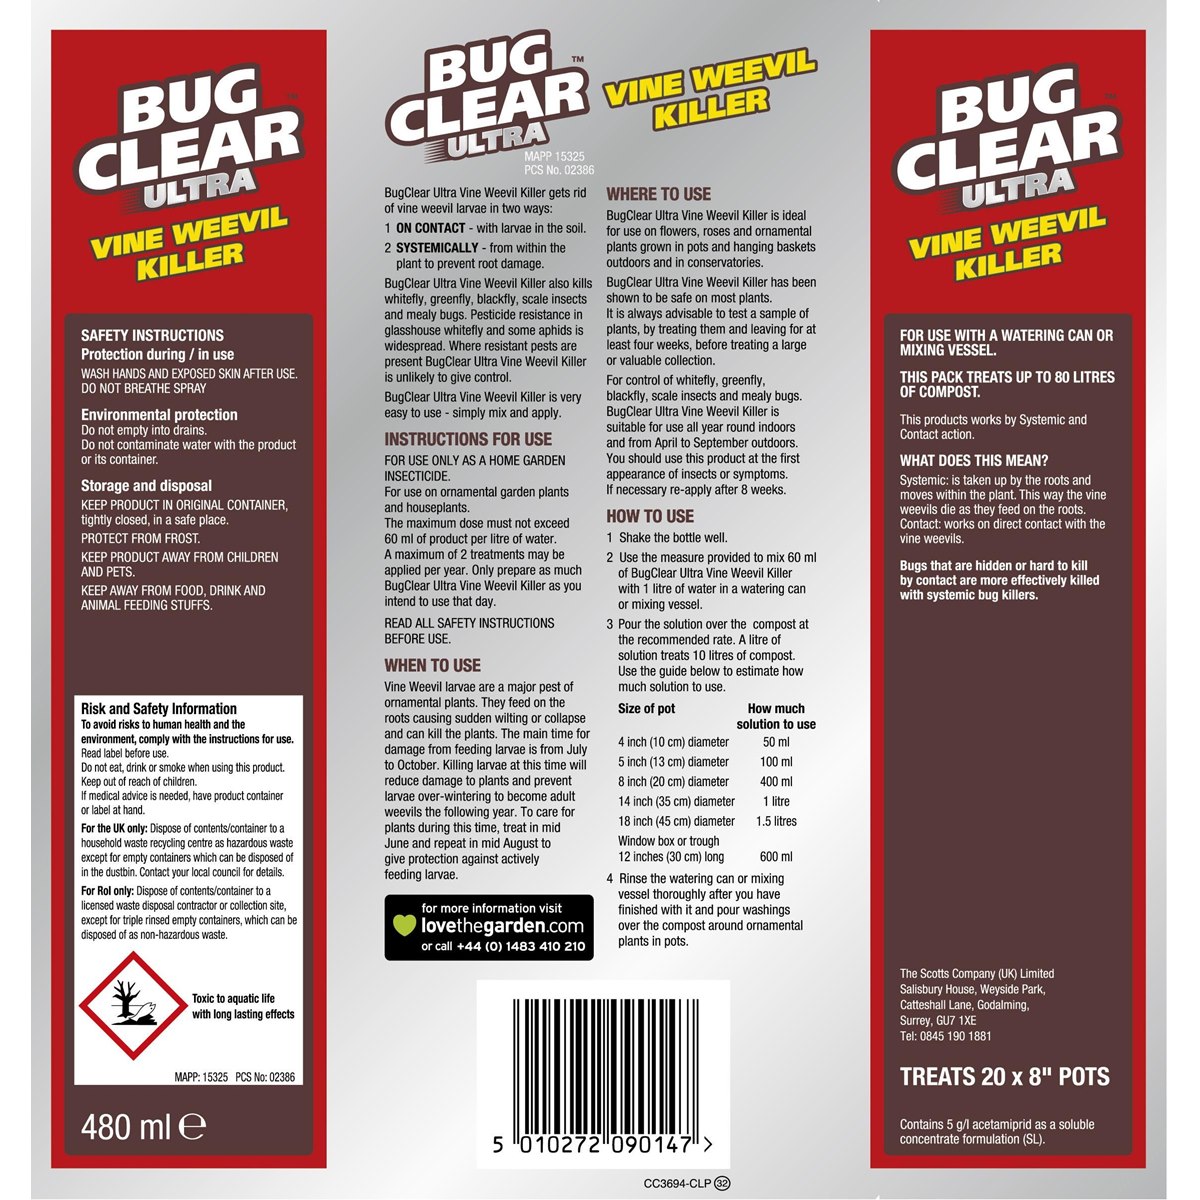 Bug Clear Ultra Vine Weevil Killer Usage Instructions